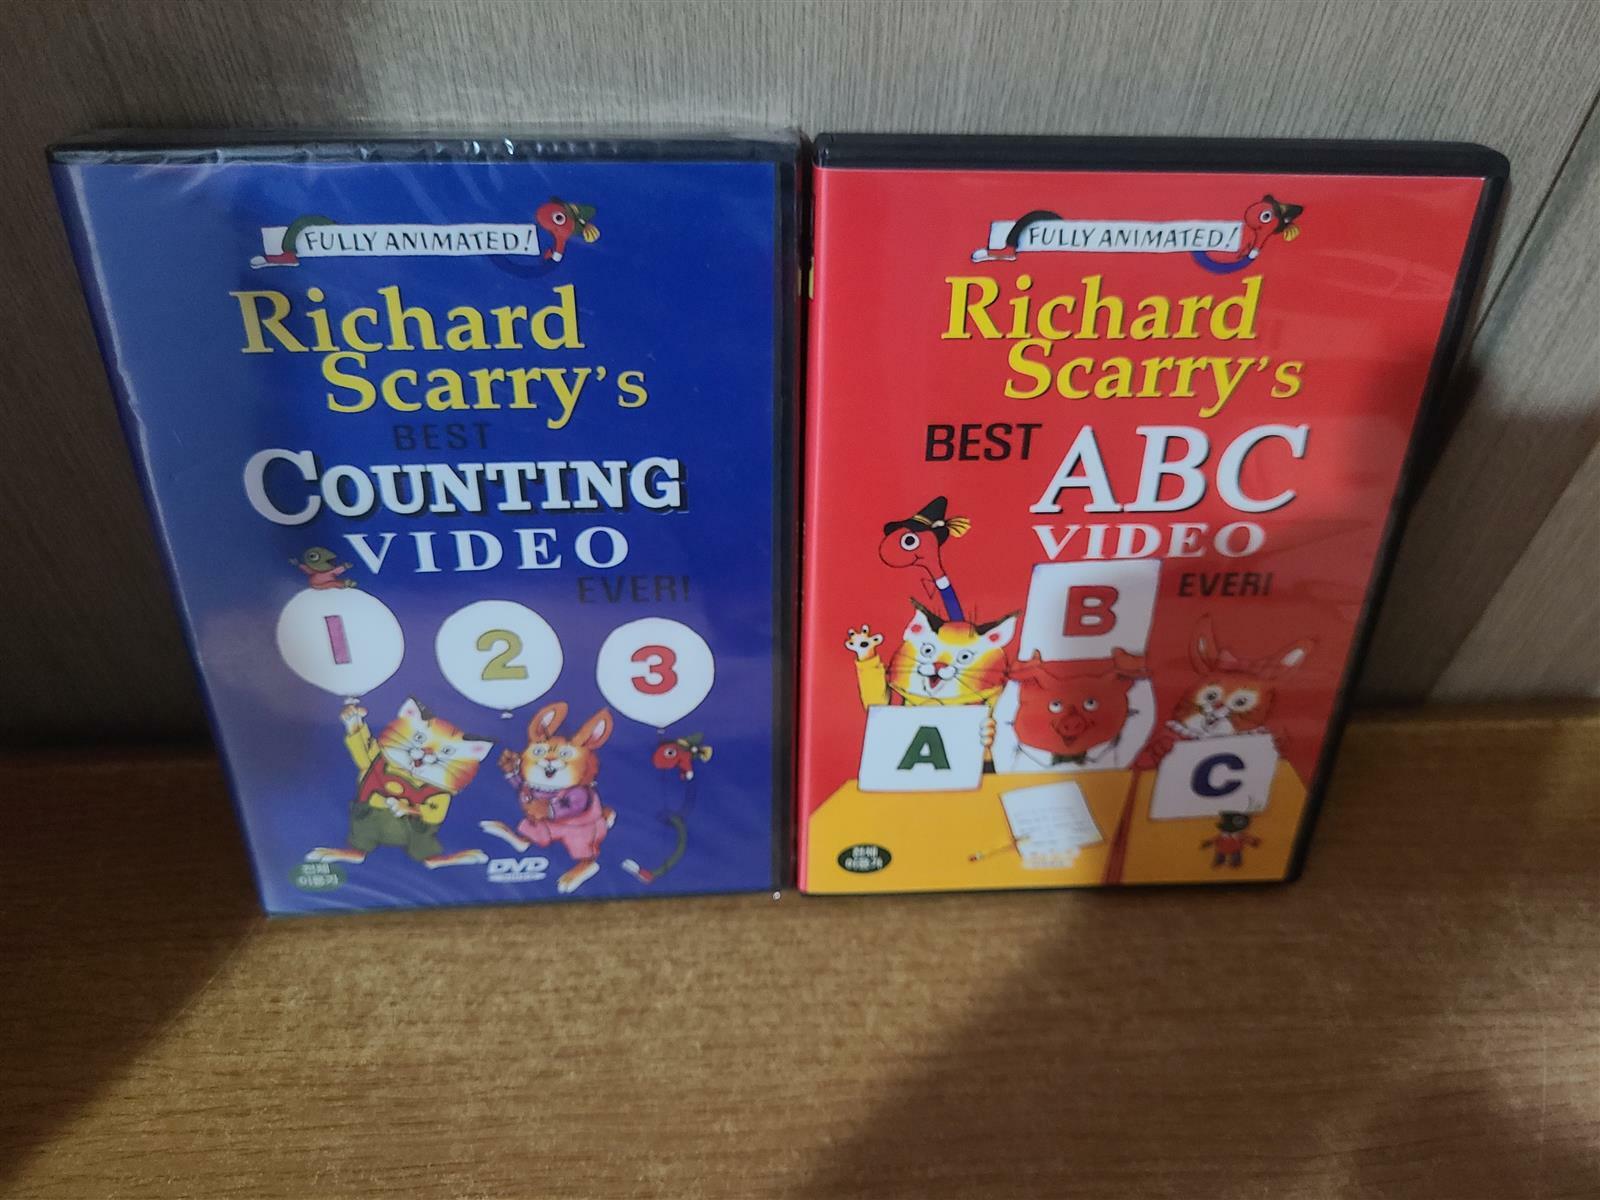 [중고] DVD 리차드 스캐리 베스트 시리즈 DVD 2장 ; ABC Video Ever! A B C (상급) + Counting  Video Ever!  1 2 3 (개봉안한새거입니다) 